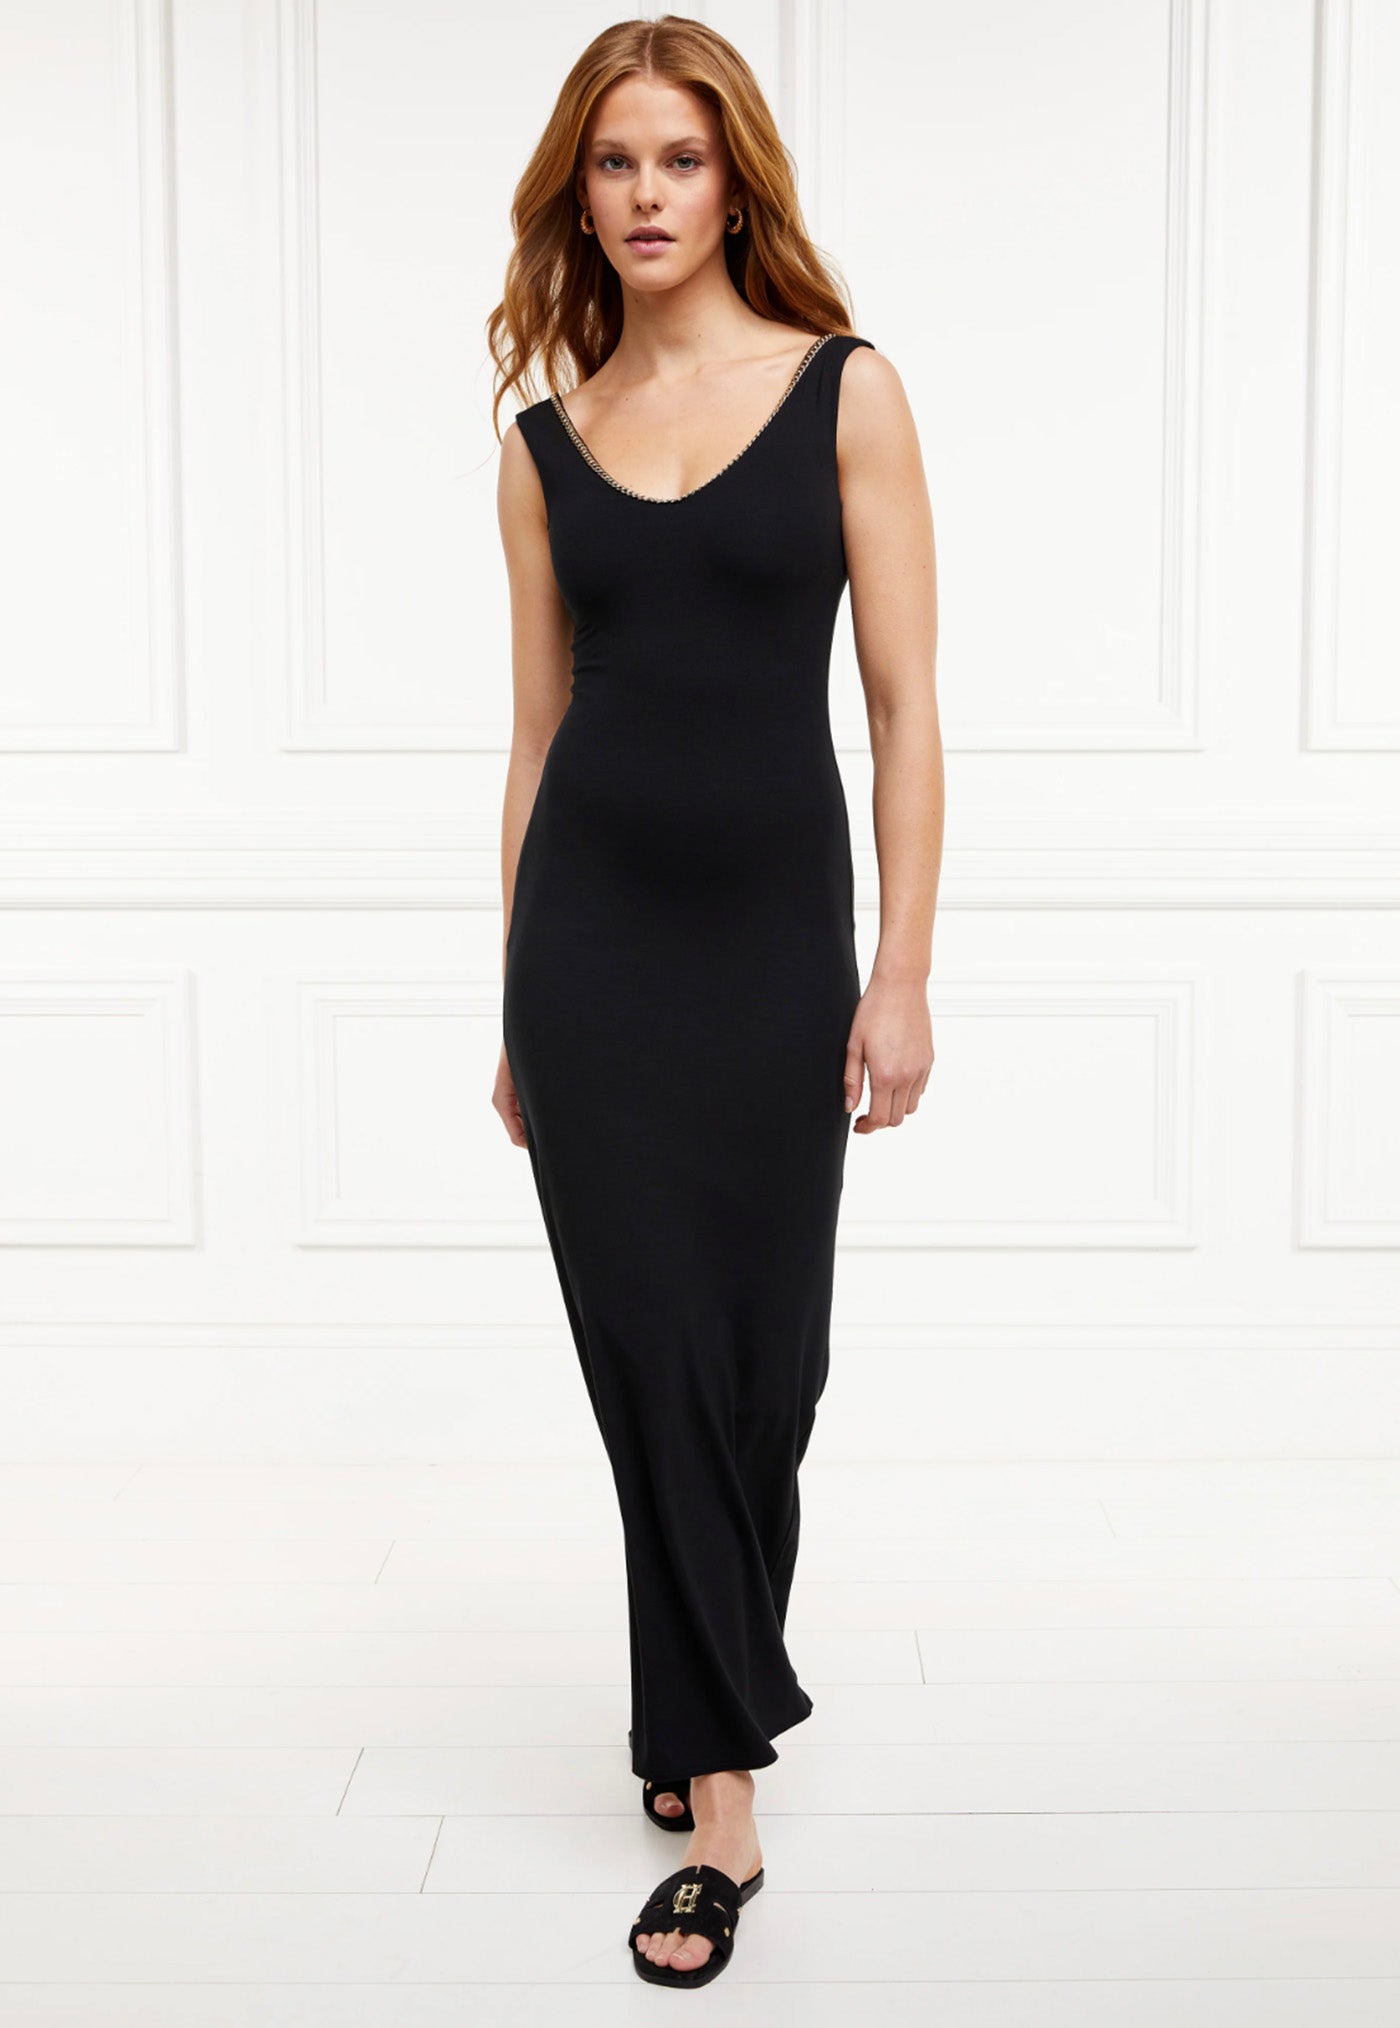 Amber V-Neck Maxi Dress - Black sold by Angel Divine